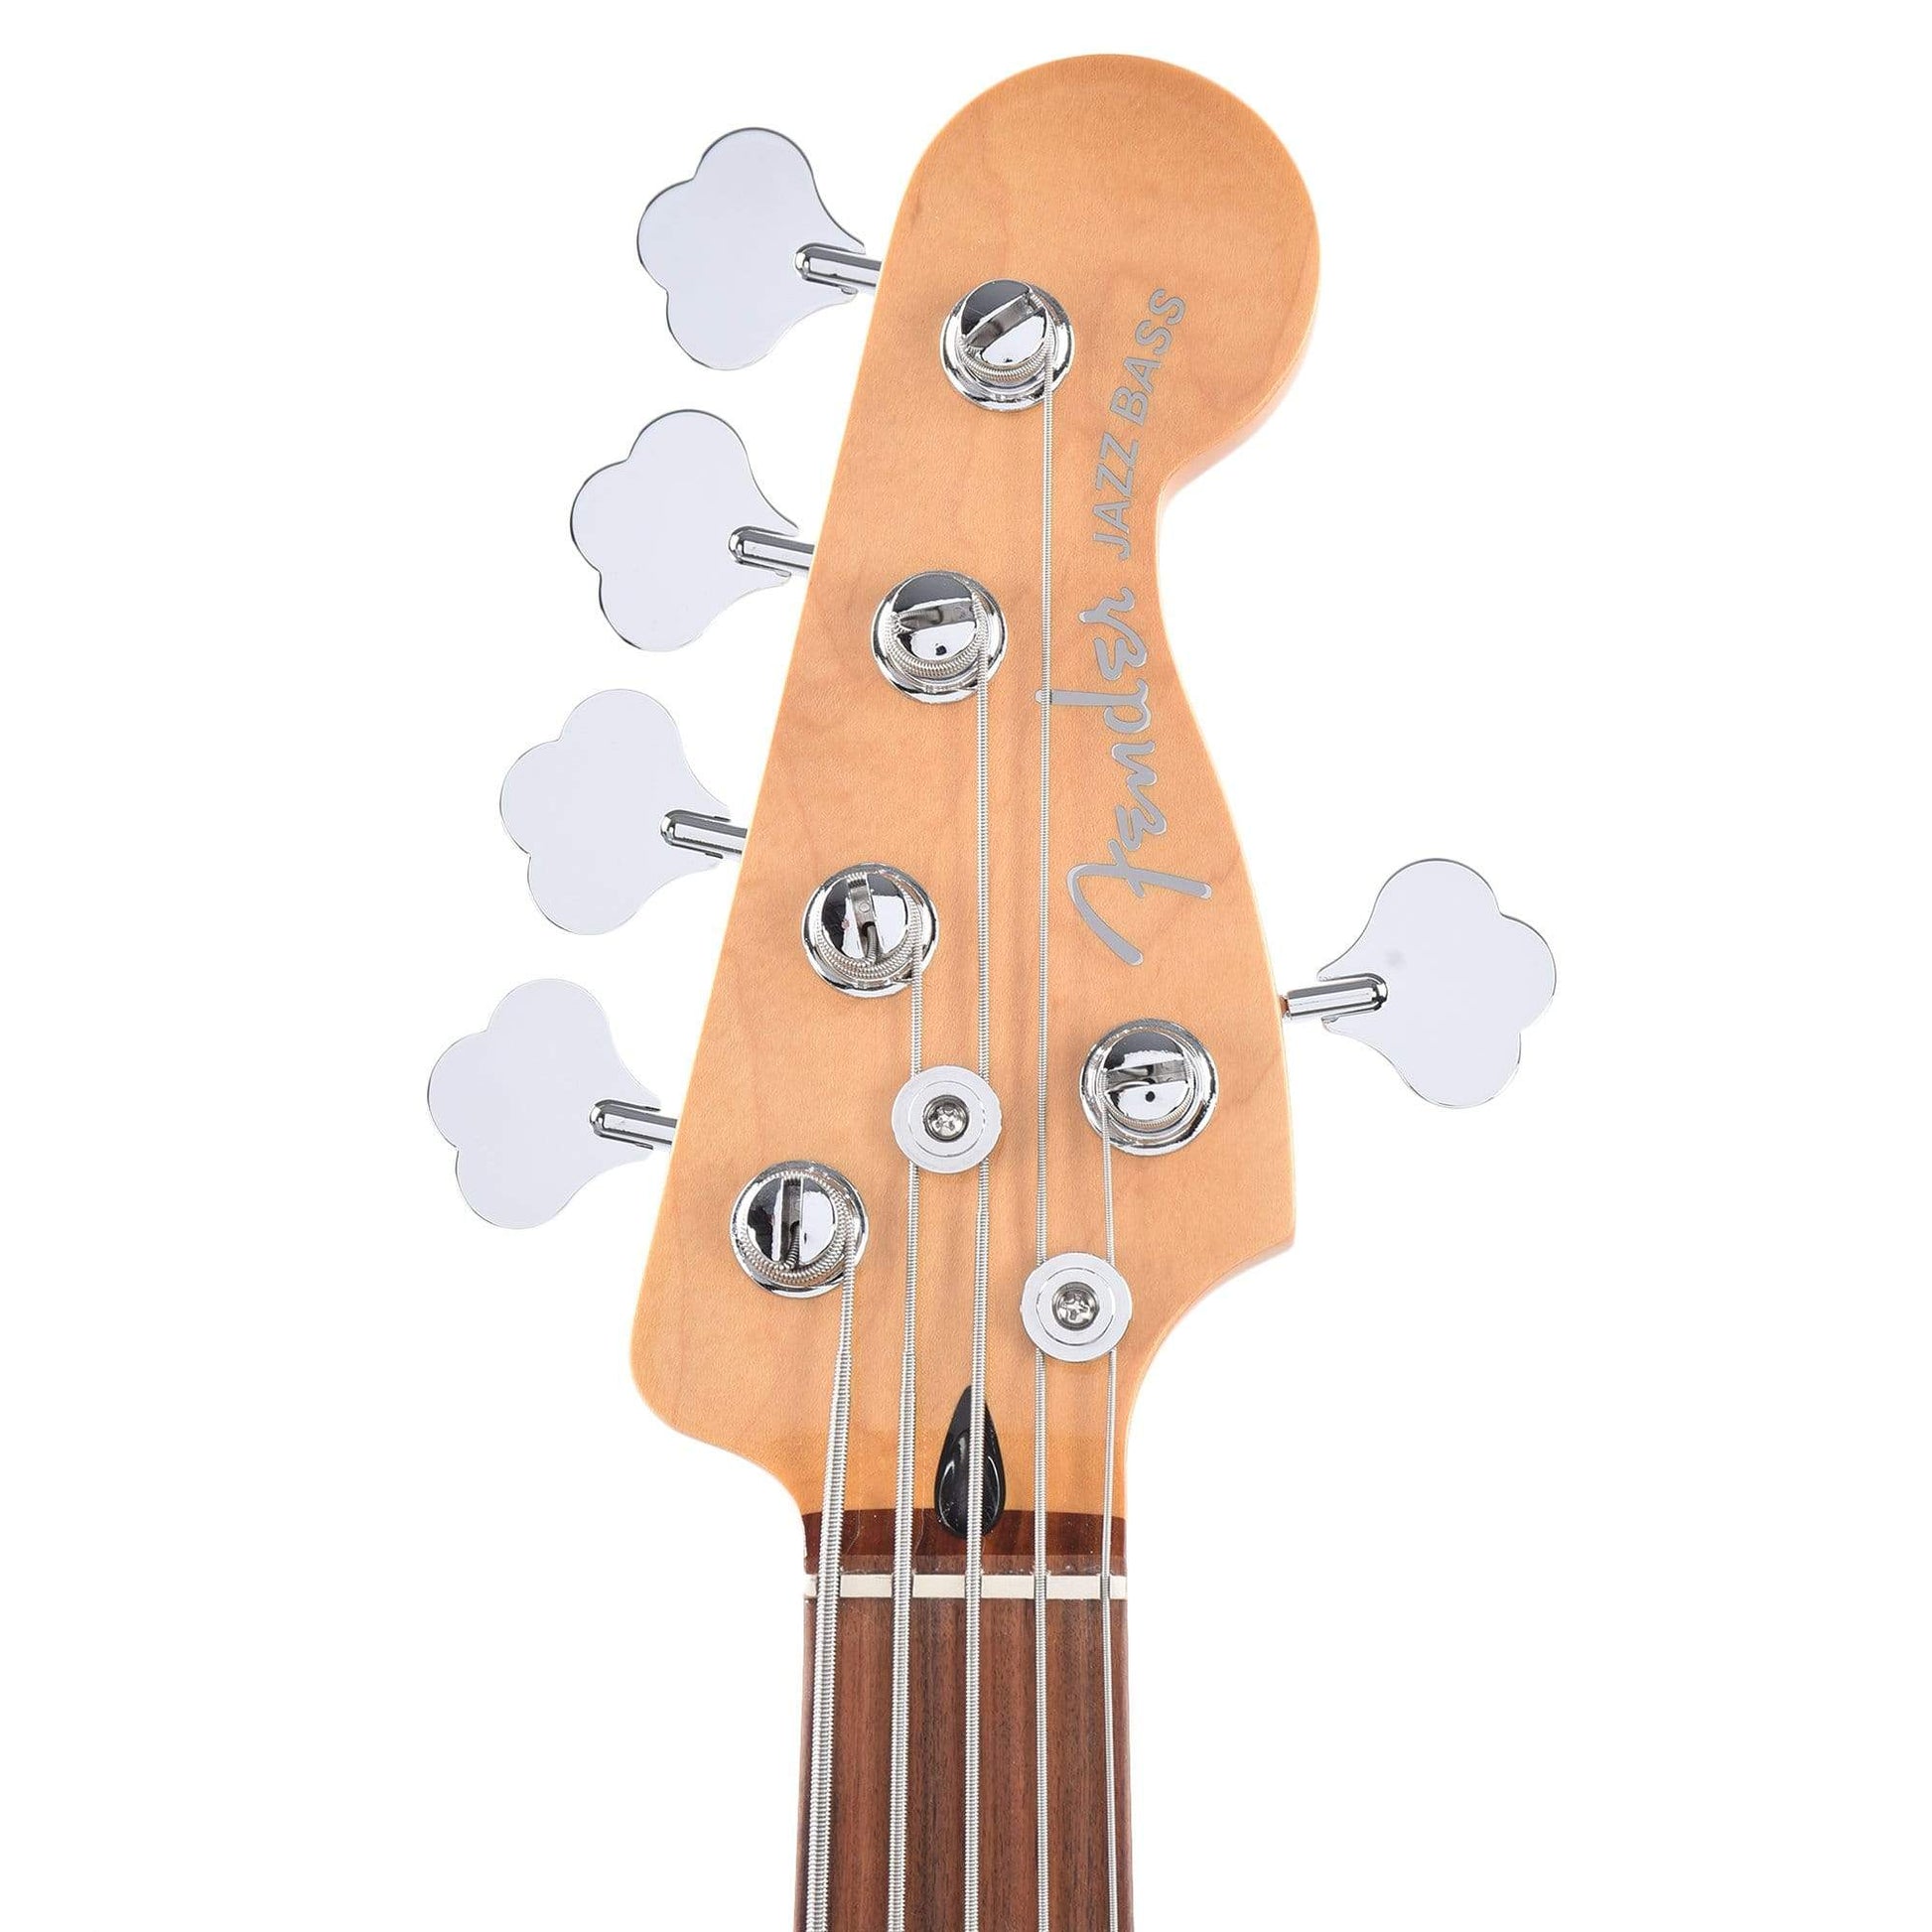 Fender Player Plus Active Jazz Bass V 3-Color Sunburst Bass Guitars / 5-String or More